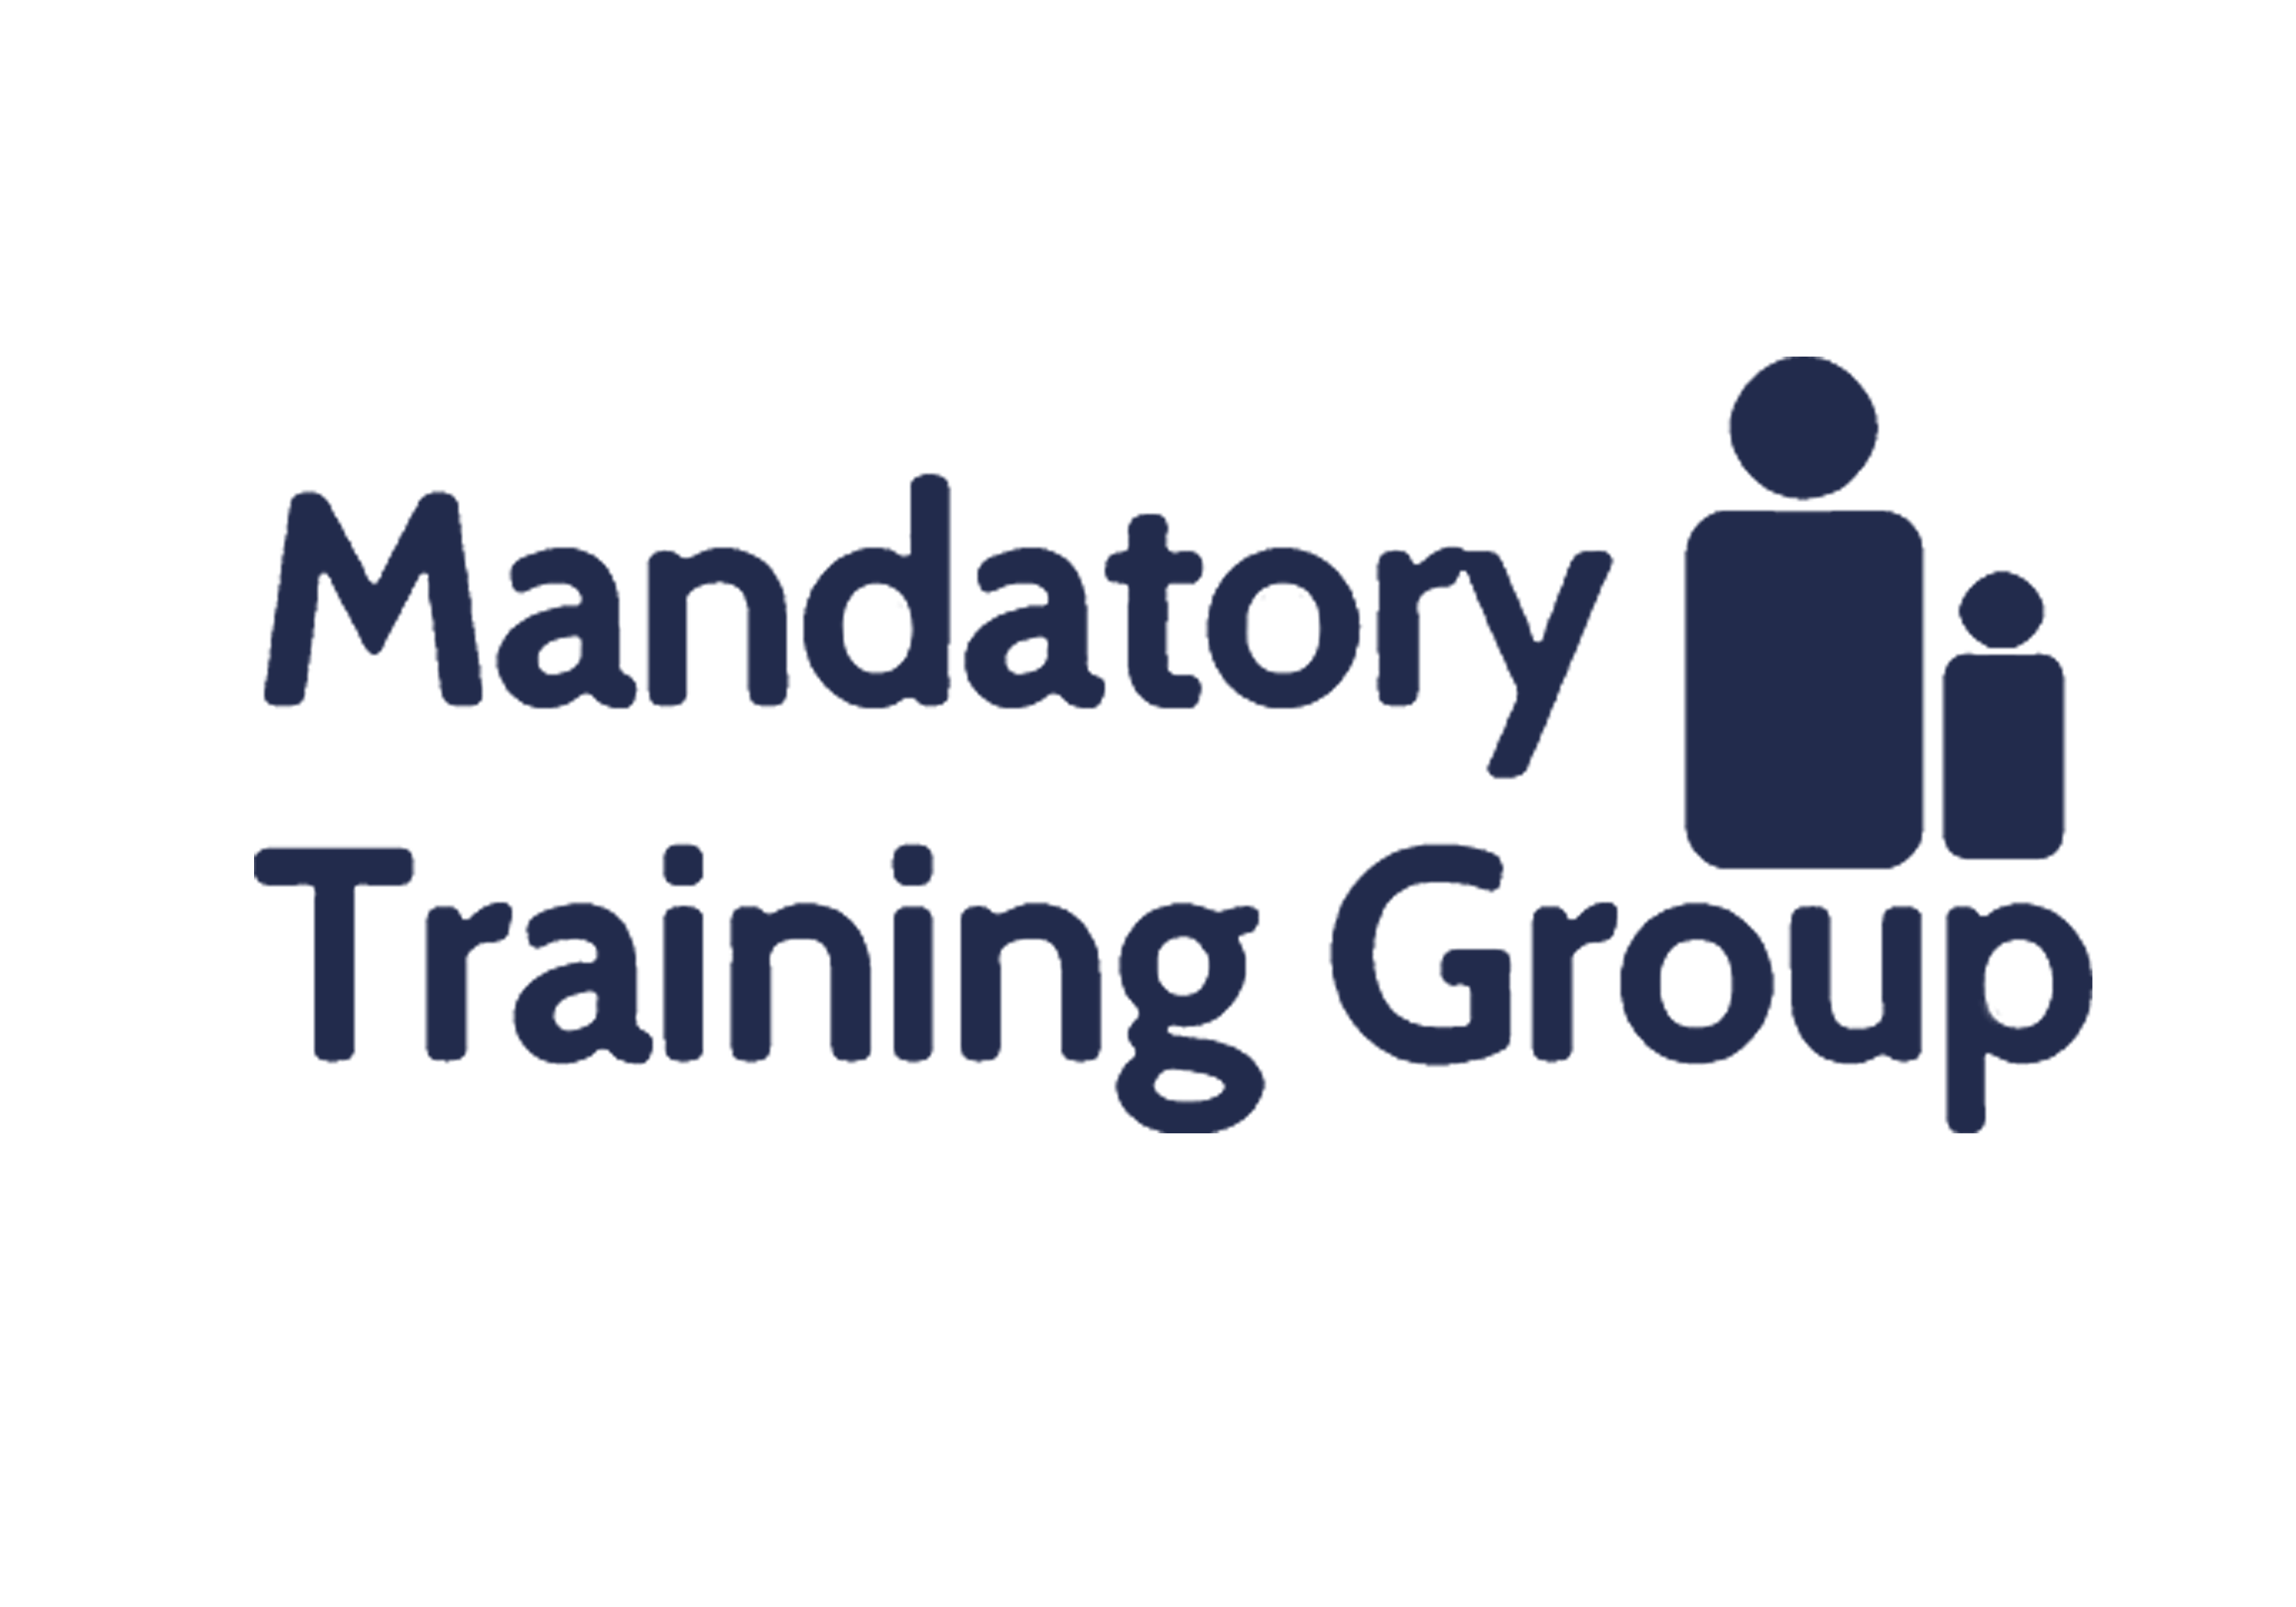 The Mandatory Training Group